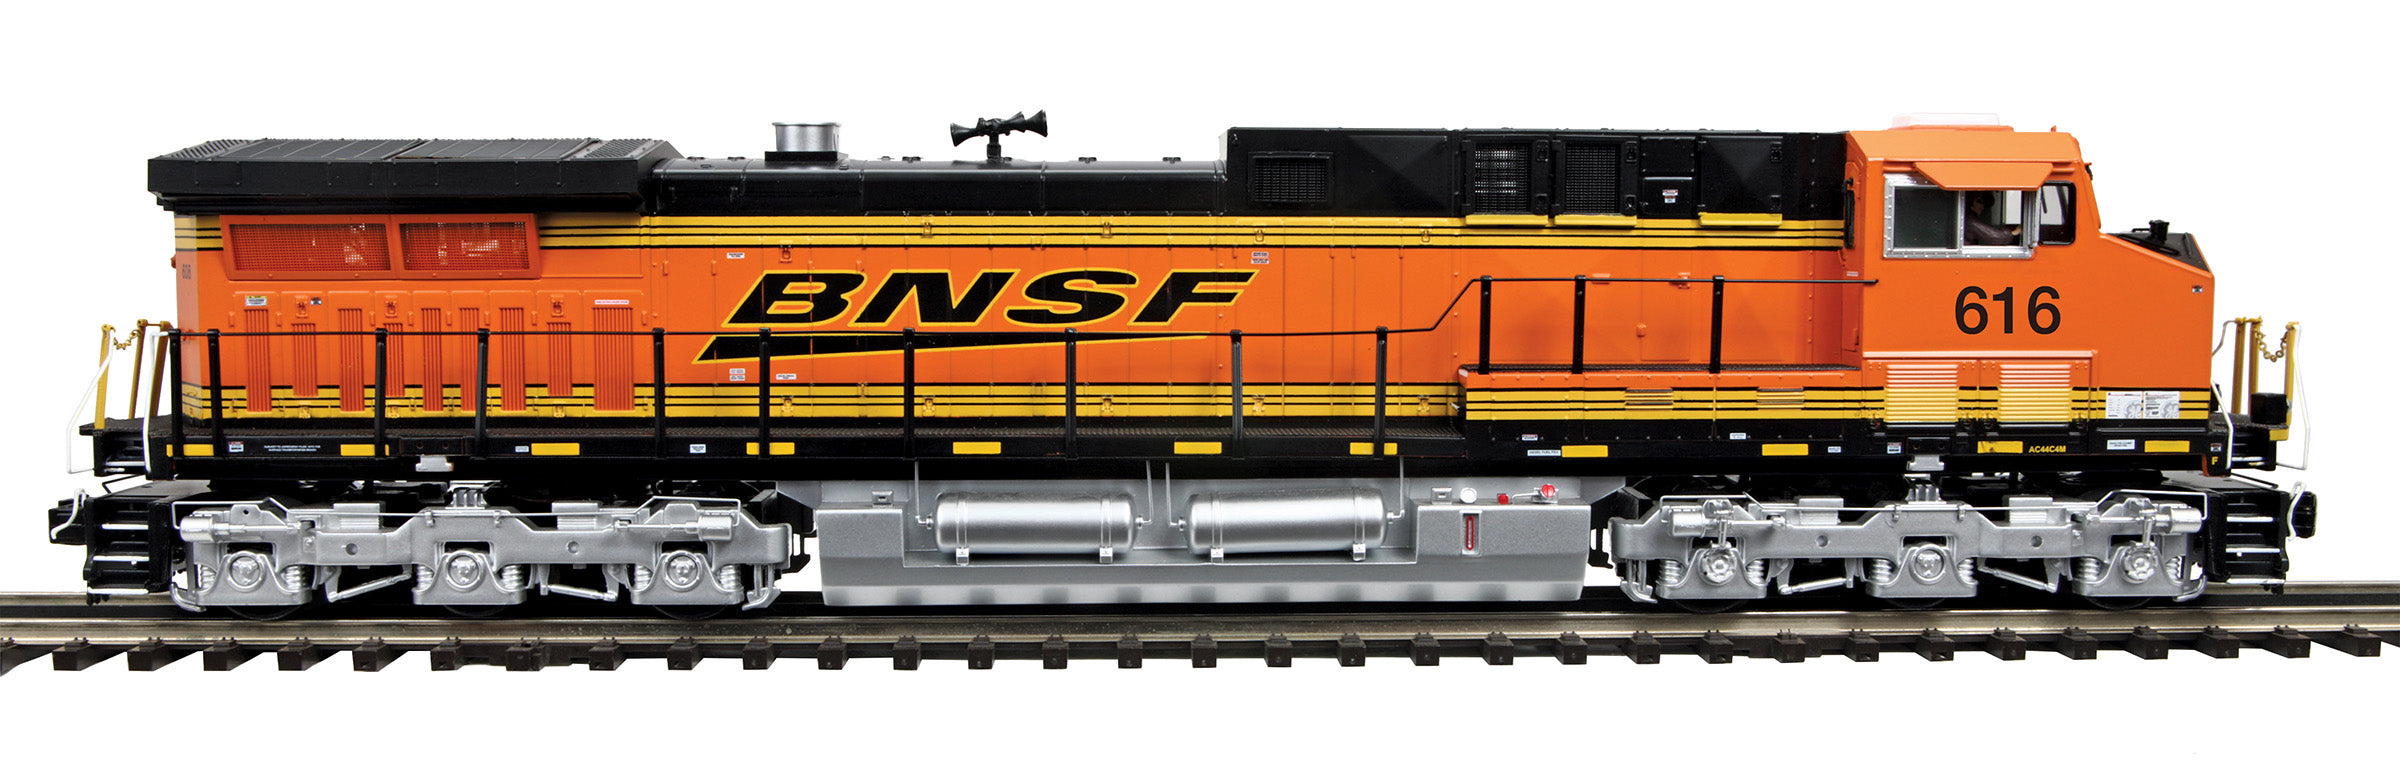 MTH 20-21741-1 - AC4400cw Diesel Engine "BNSF " #616 w/ PS3 (Hi-Rail Wheels)